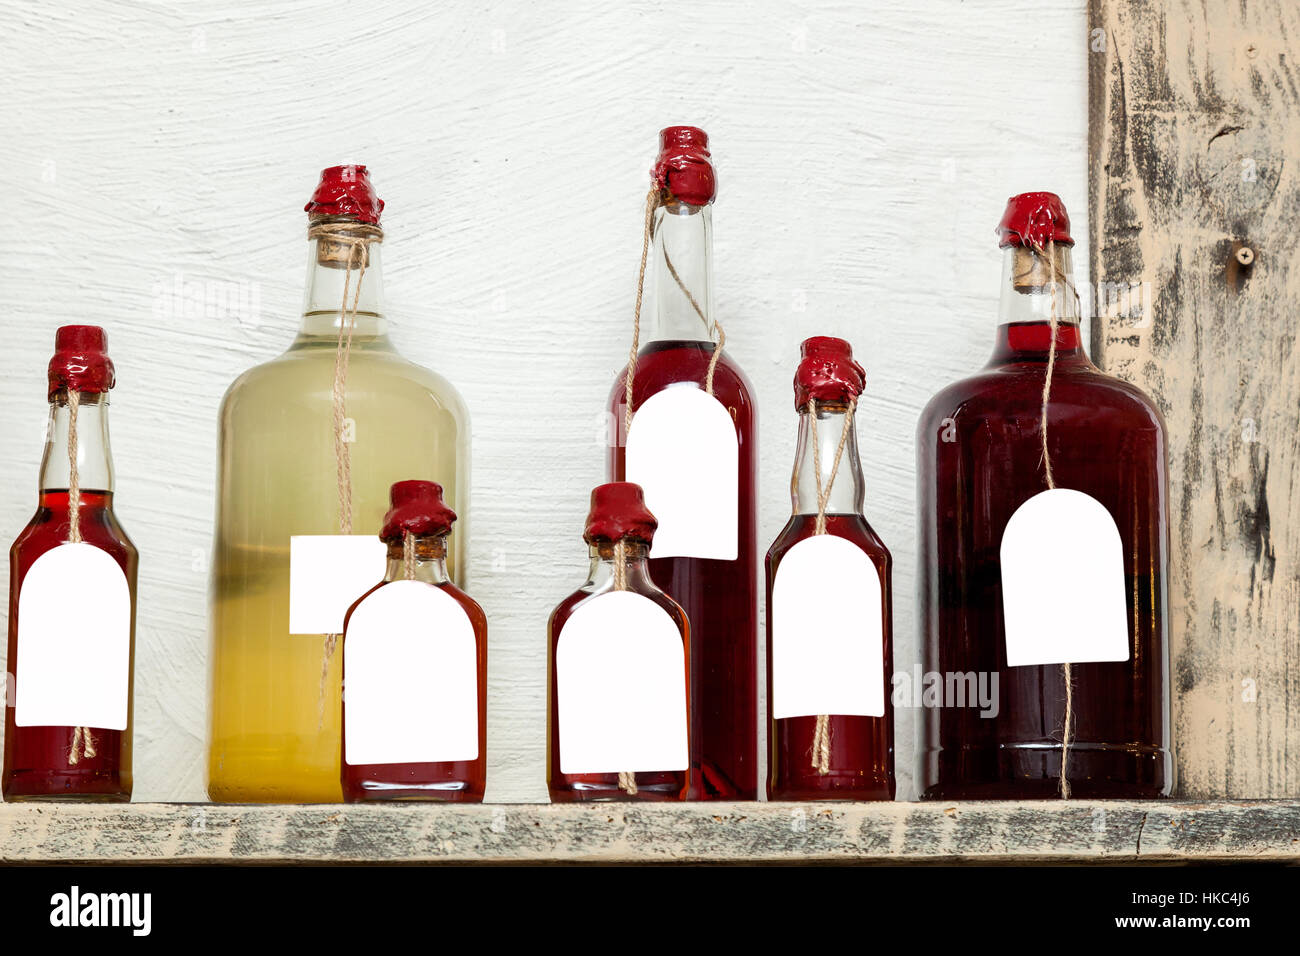 Flaschen für Liköre. Sieben Glasflaschen in verschiedenen Größen mit Likör,  mit Wachs versiegelt Stockfotografie - Alamy